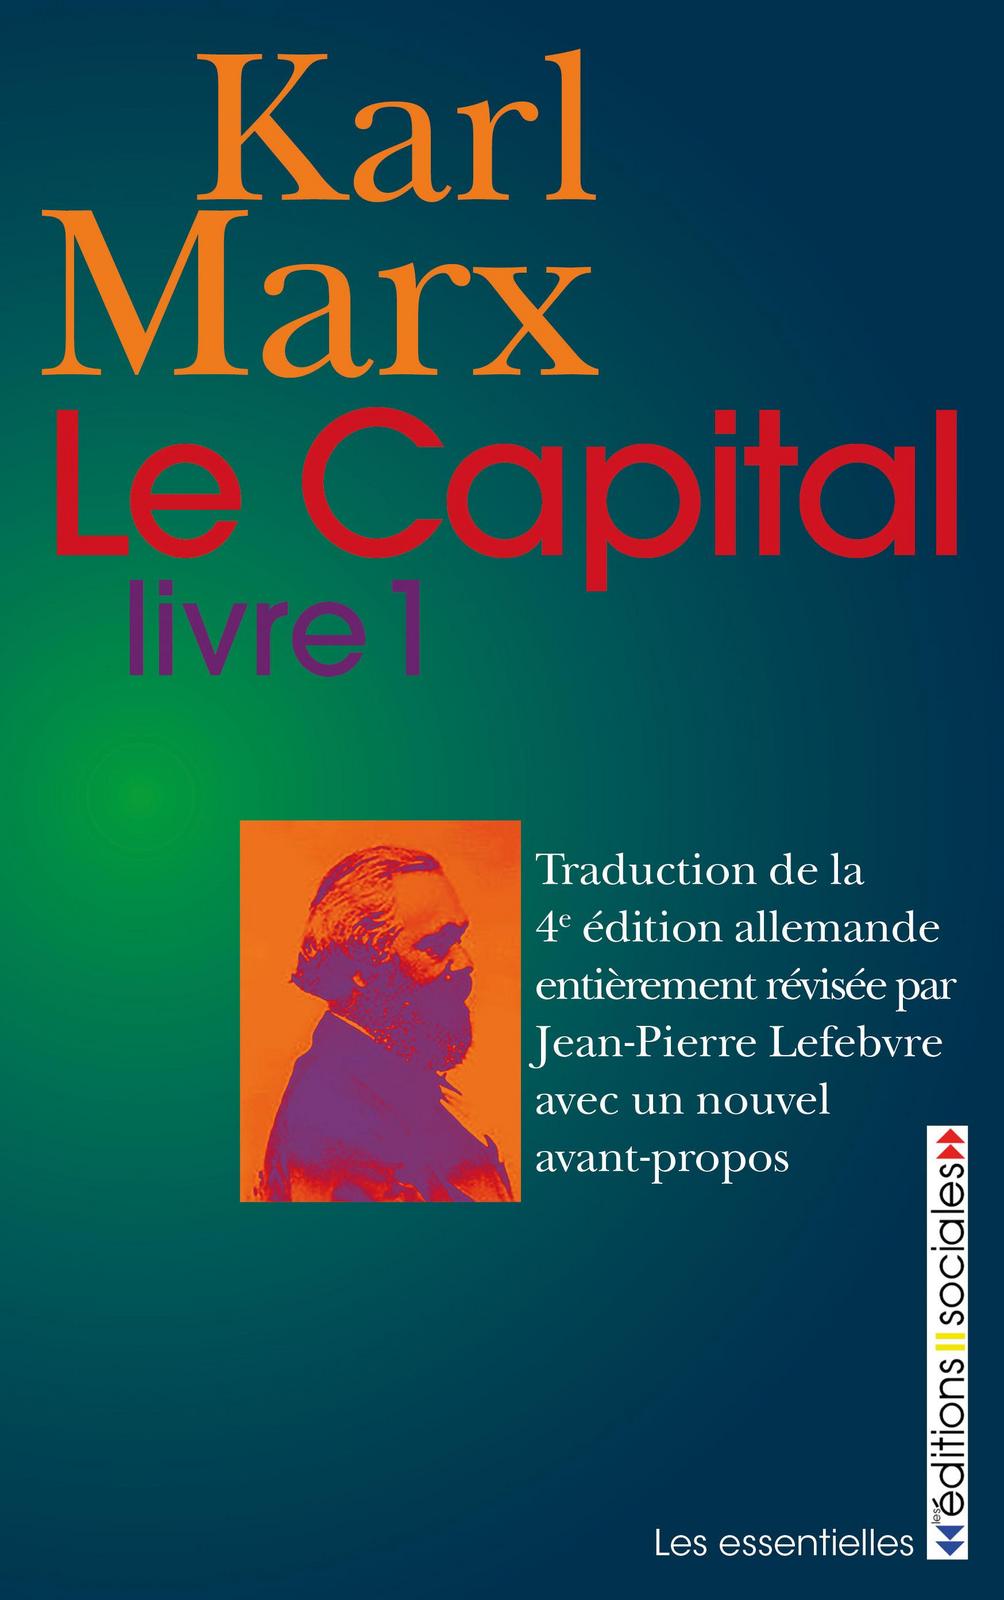 Karl Marx: Le capital - Livre 1 (French language, 2016, Éditions sociales)